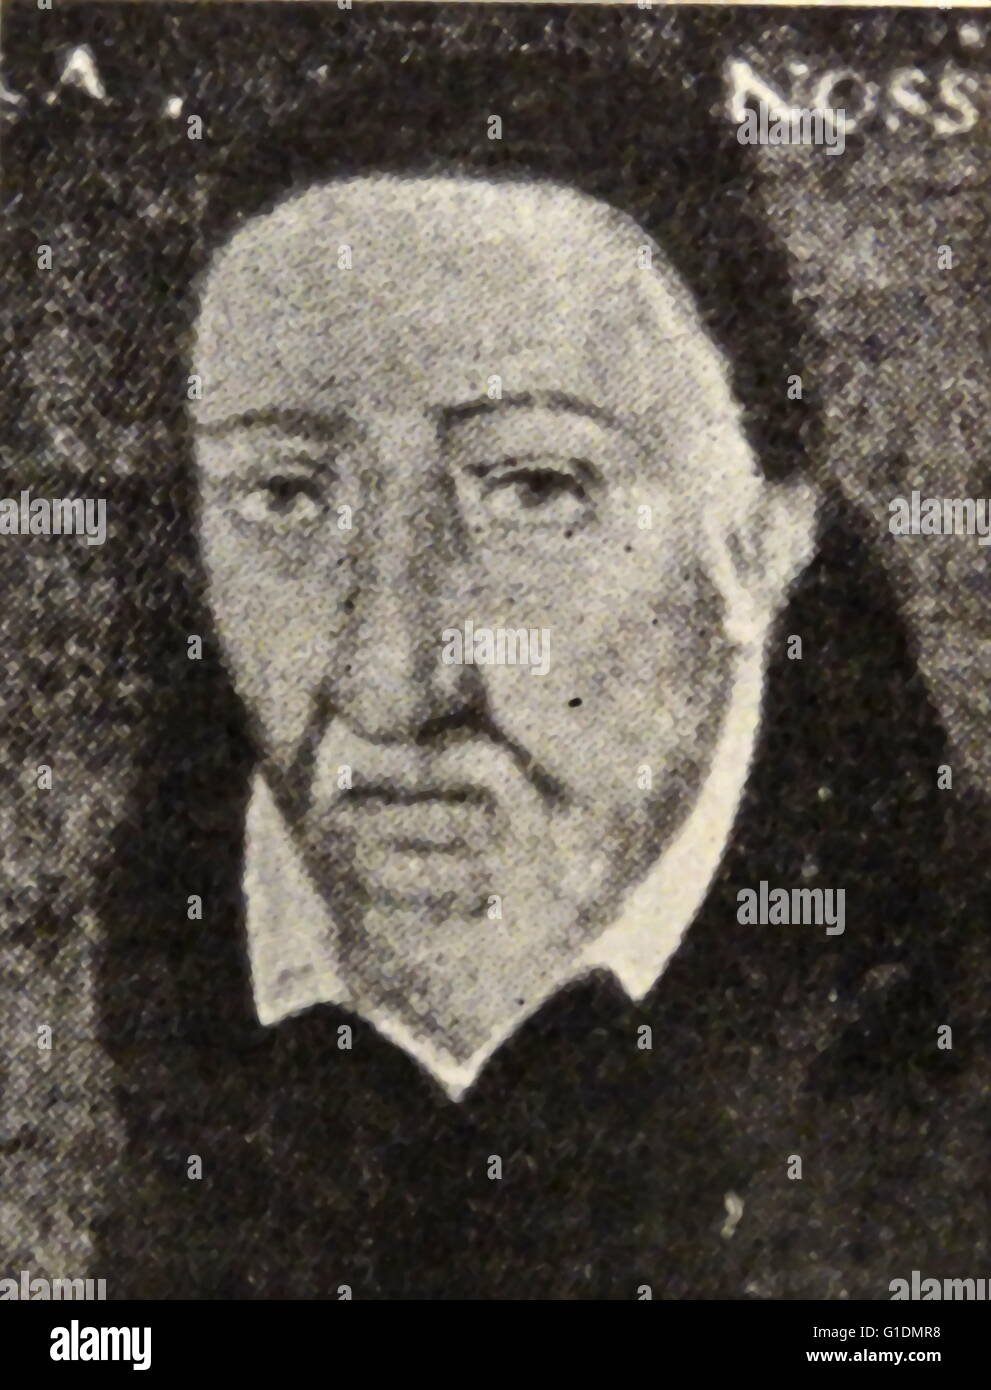 Porträt von George Buchanan (1506-1582), ein schottischer Historiker und humanistischer Gelehrter. Datiert aus dem 16. Jahrhundert Stockfoto